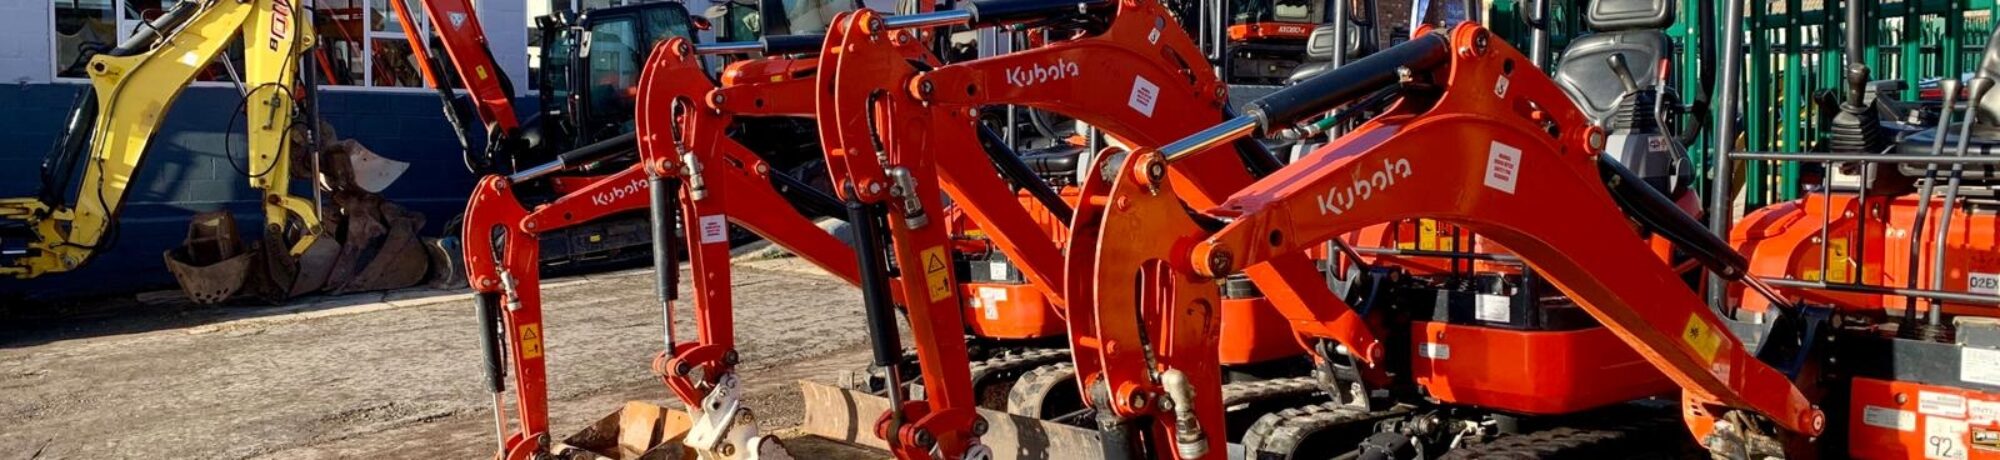 Kubota Excavators for sale at Jay Bee Plant Sales